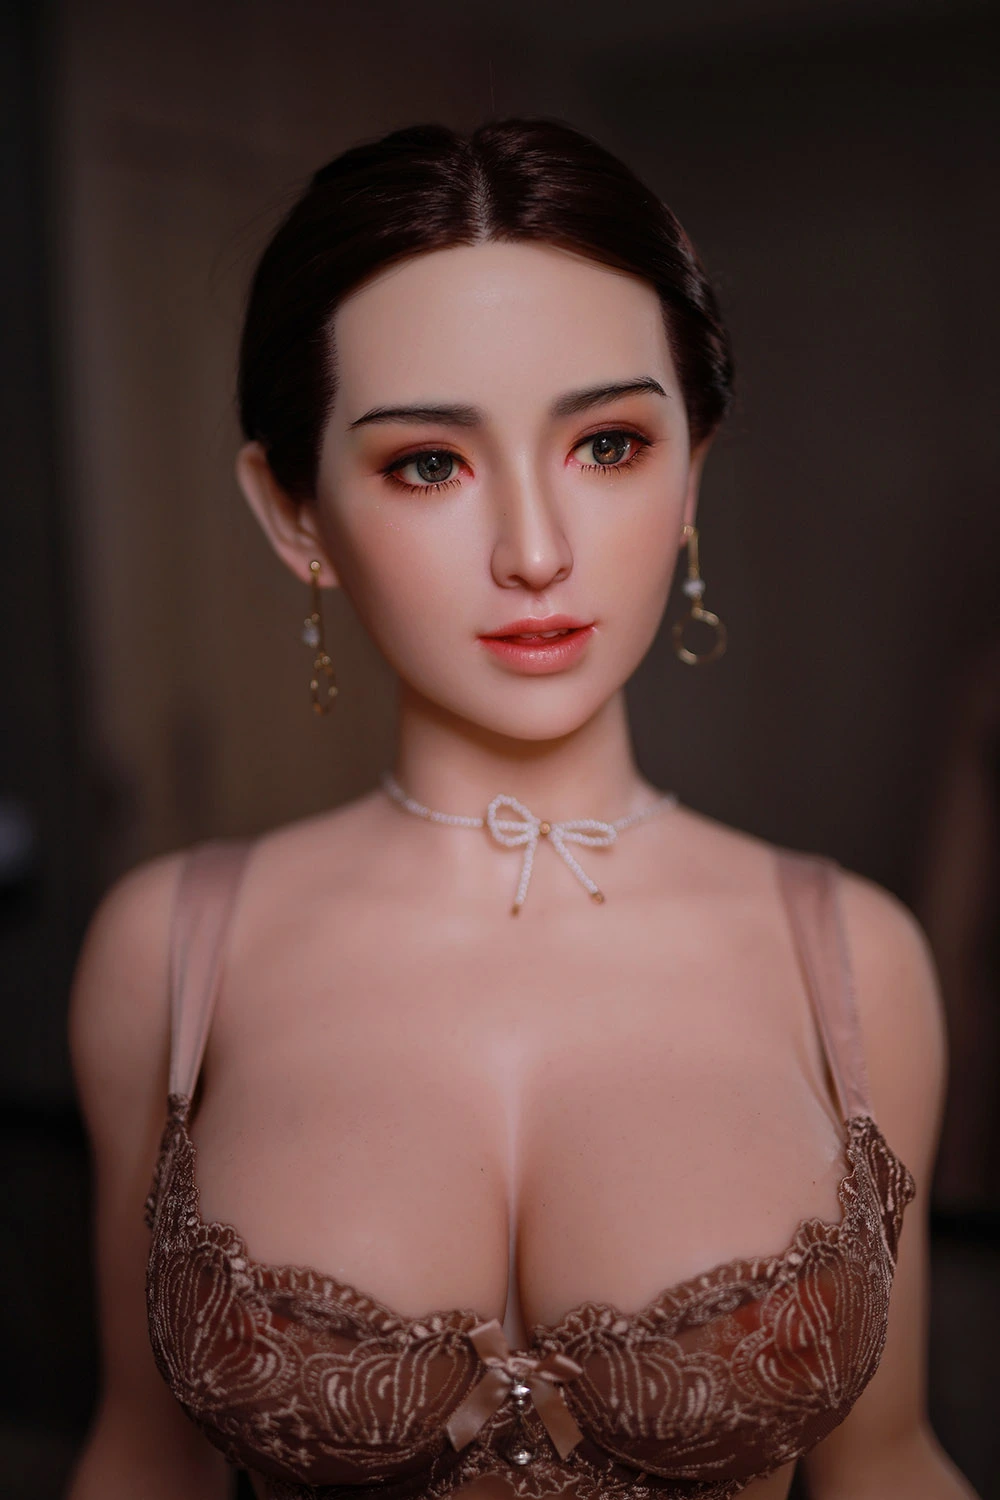 163cm Curvy Sexy Teen Girls Love Doll Mei Xiao